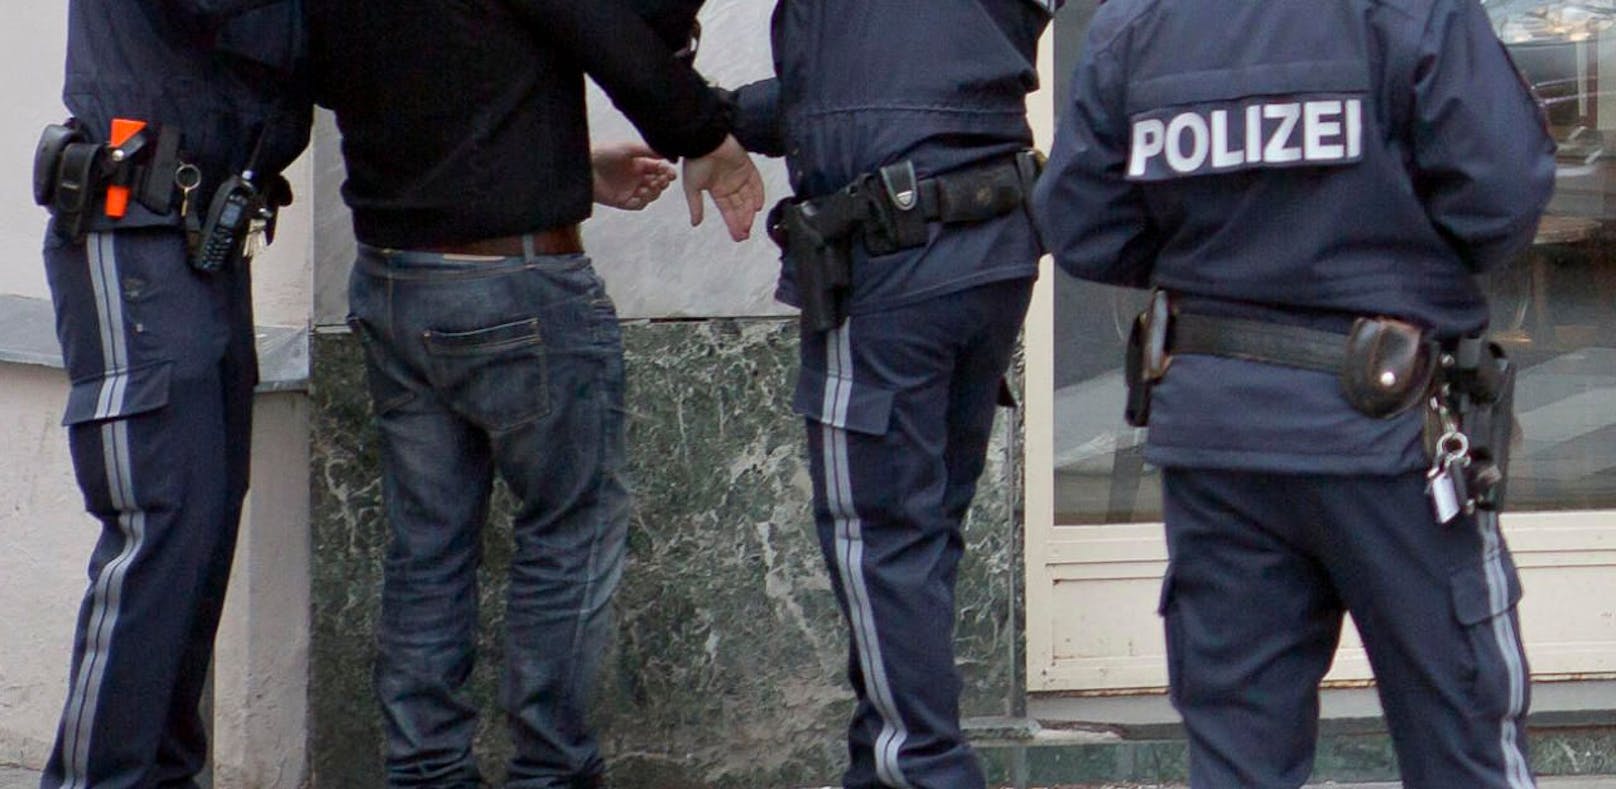 (Symbolbild) Der 37-jährige serbische Staatsbürger ist in Haft.